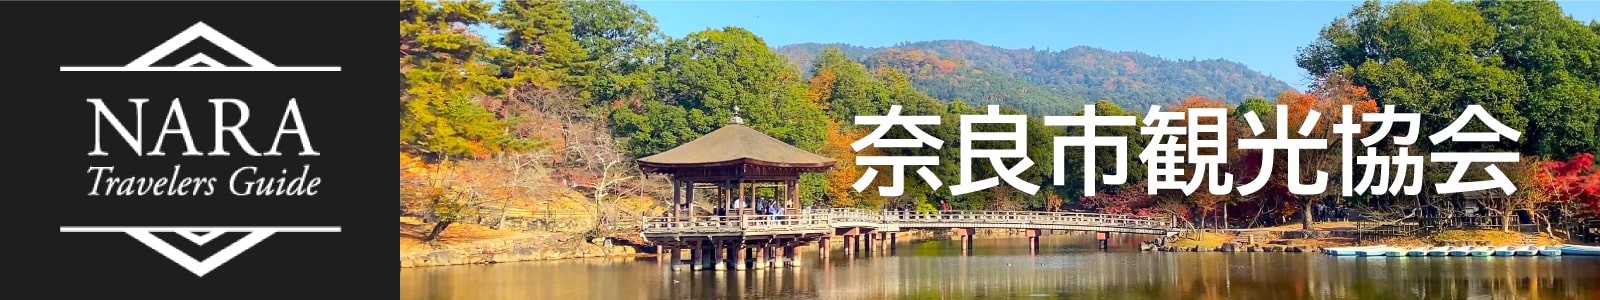 Ask About Nara to Tourism association